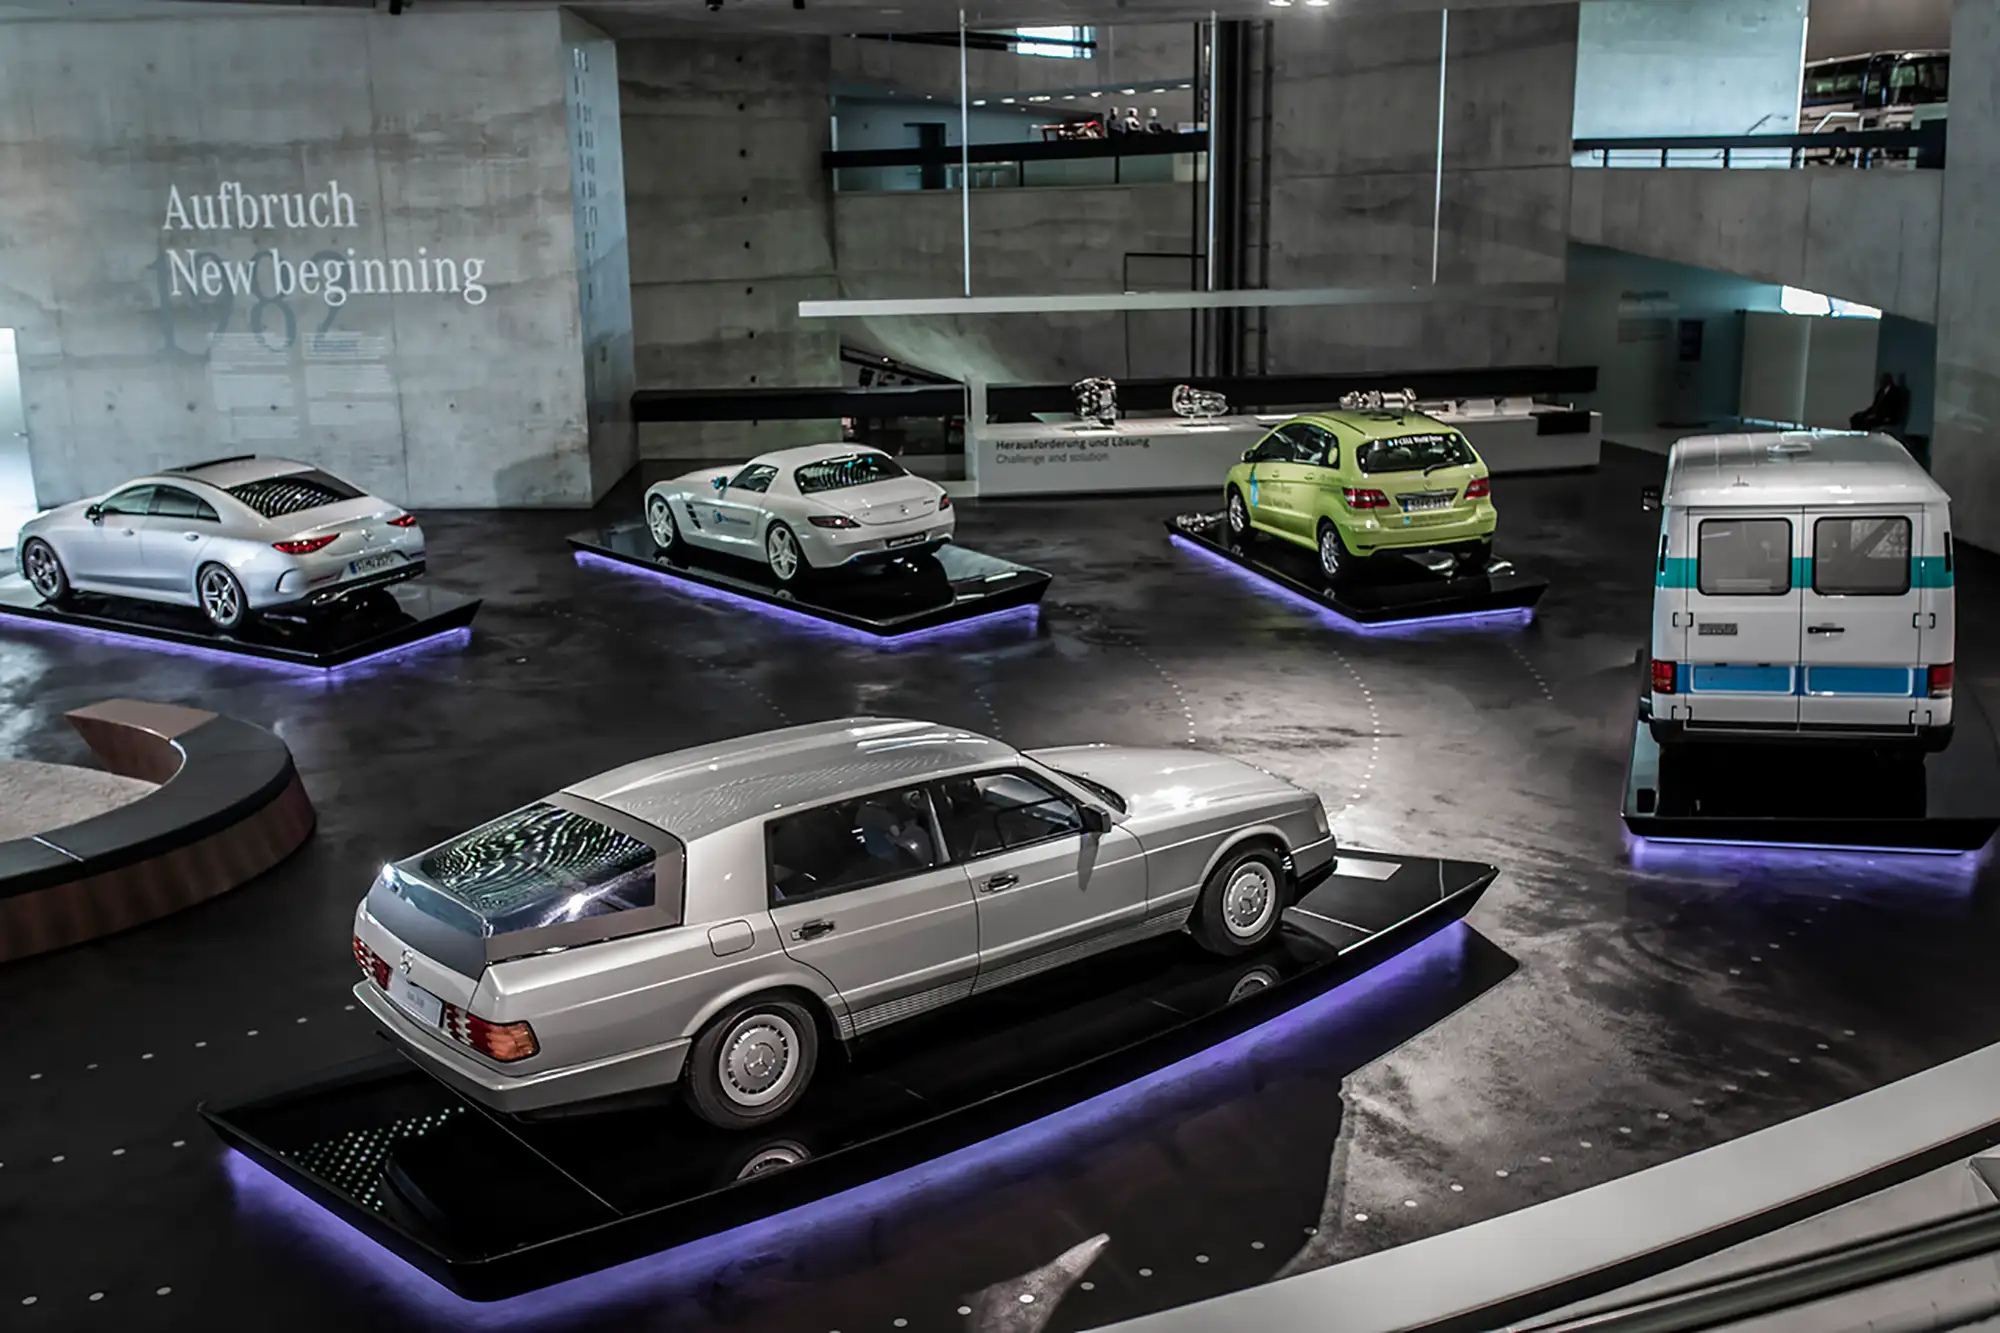 Mercedes Museum Stuttgart - Der Mythosraum 6 der verschiedene Wagen aus verschiedenen Jahrzehnten zeigt, die im Kreis aufgestellt sind